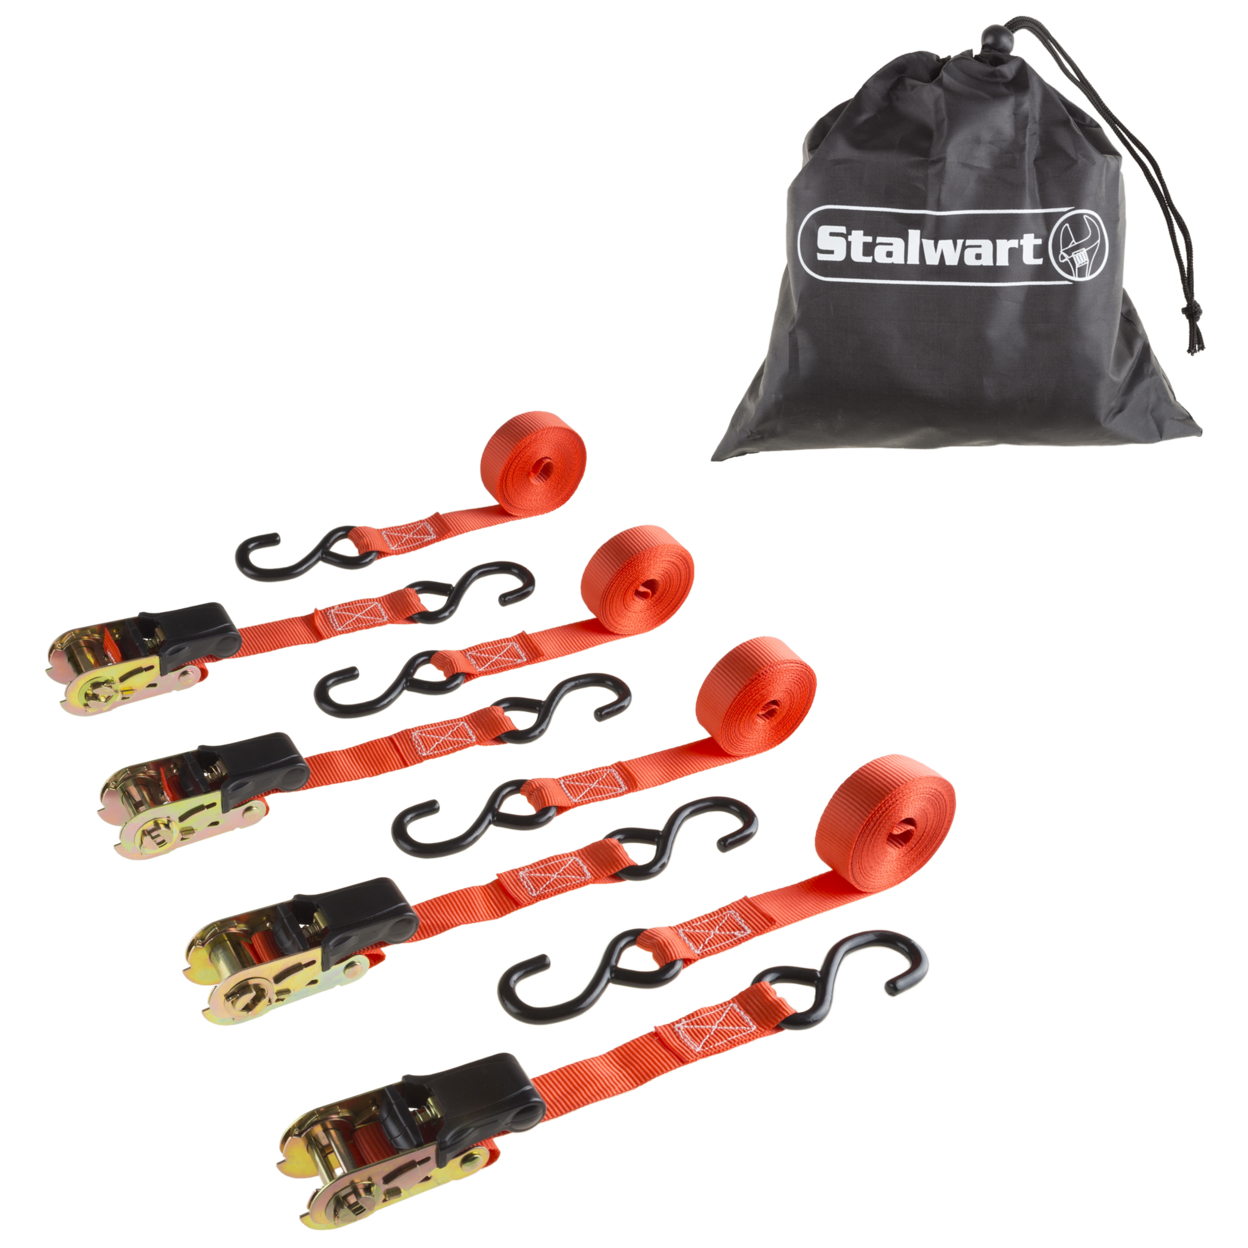 Stalwart 4 Pack Ratchet Tie Down Straps - 15 Ft. - 500 Lb Load